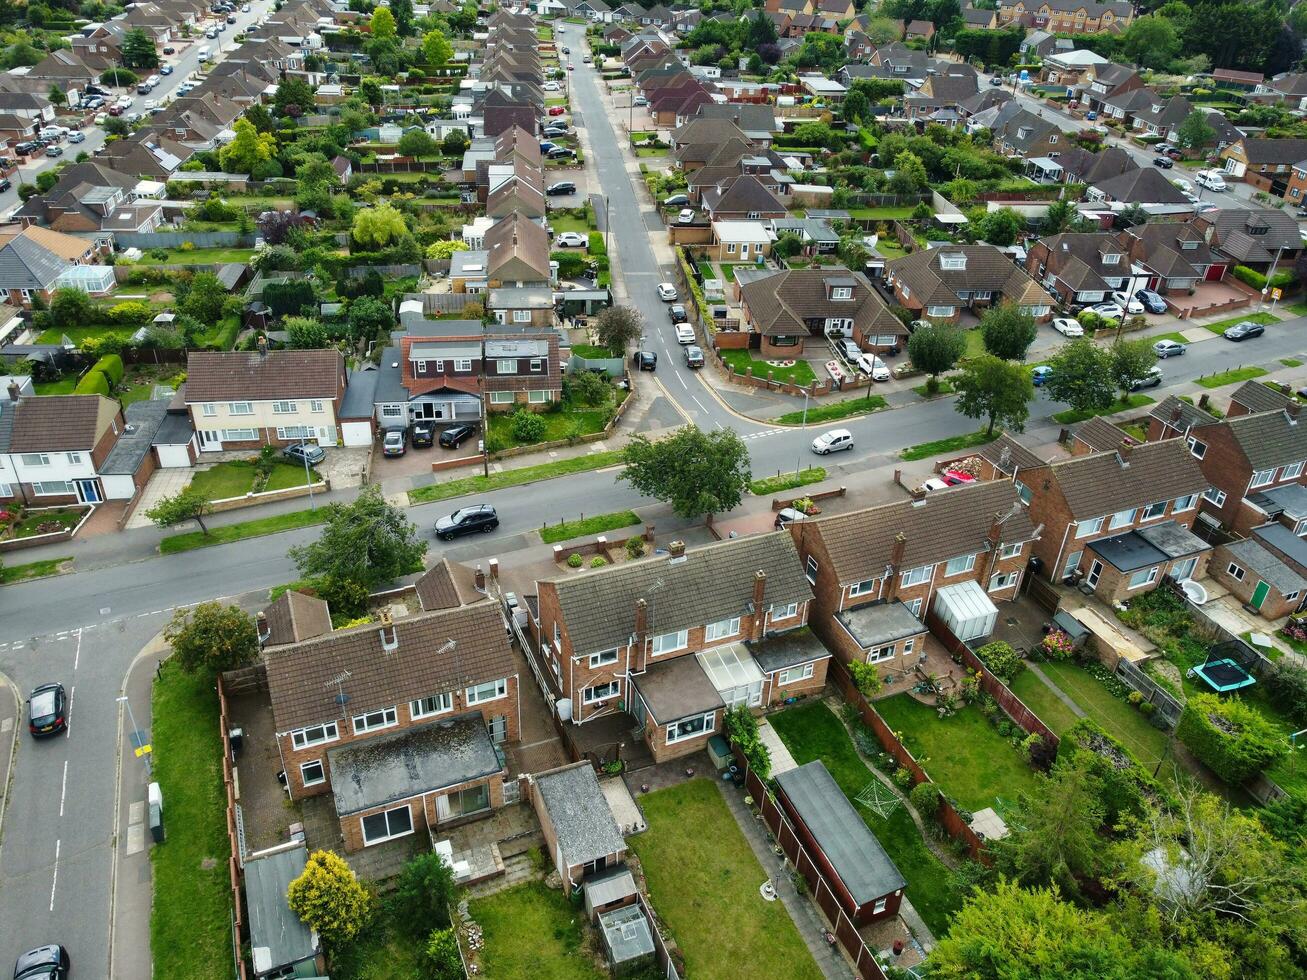 Alto ângulo Visão do ocidental luton cidade e residencial distrito. aéreo Visão do capturado com drones Câmera em 30 julho, 2023. Inglaterra, Reino Unido foto